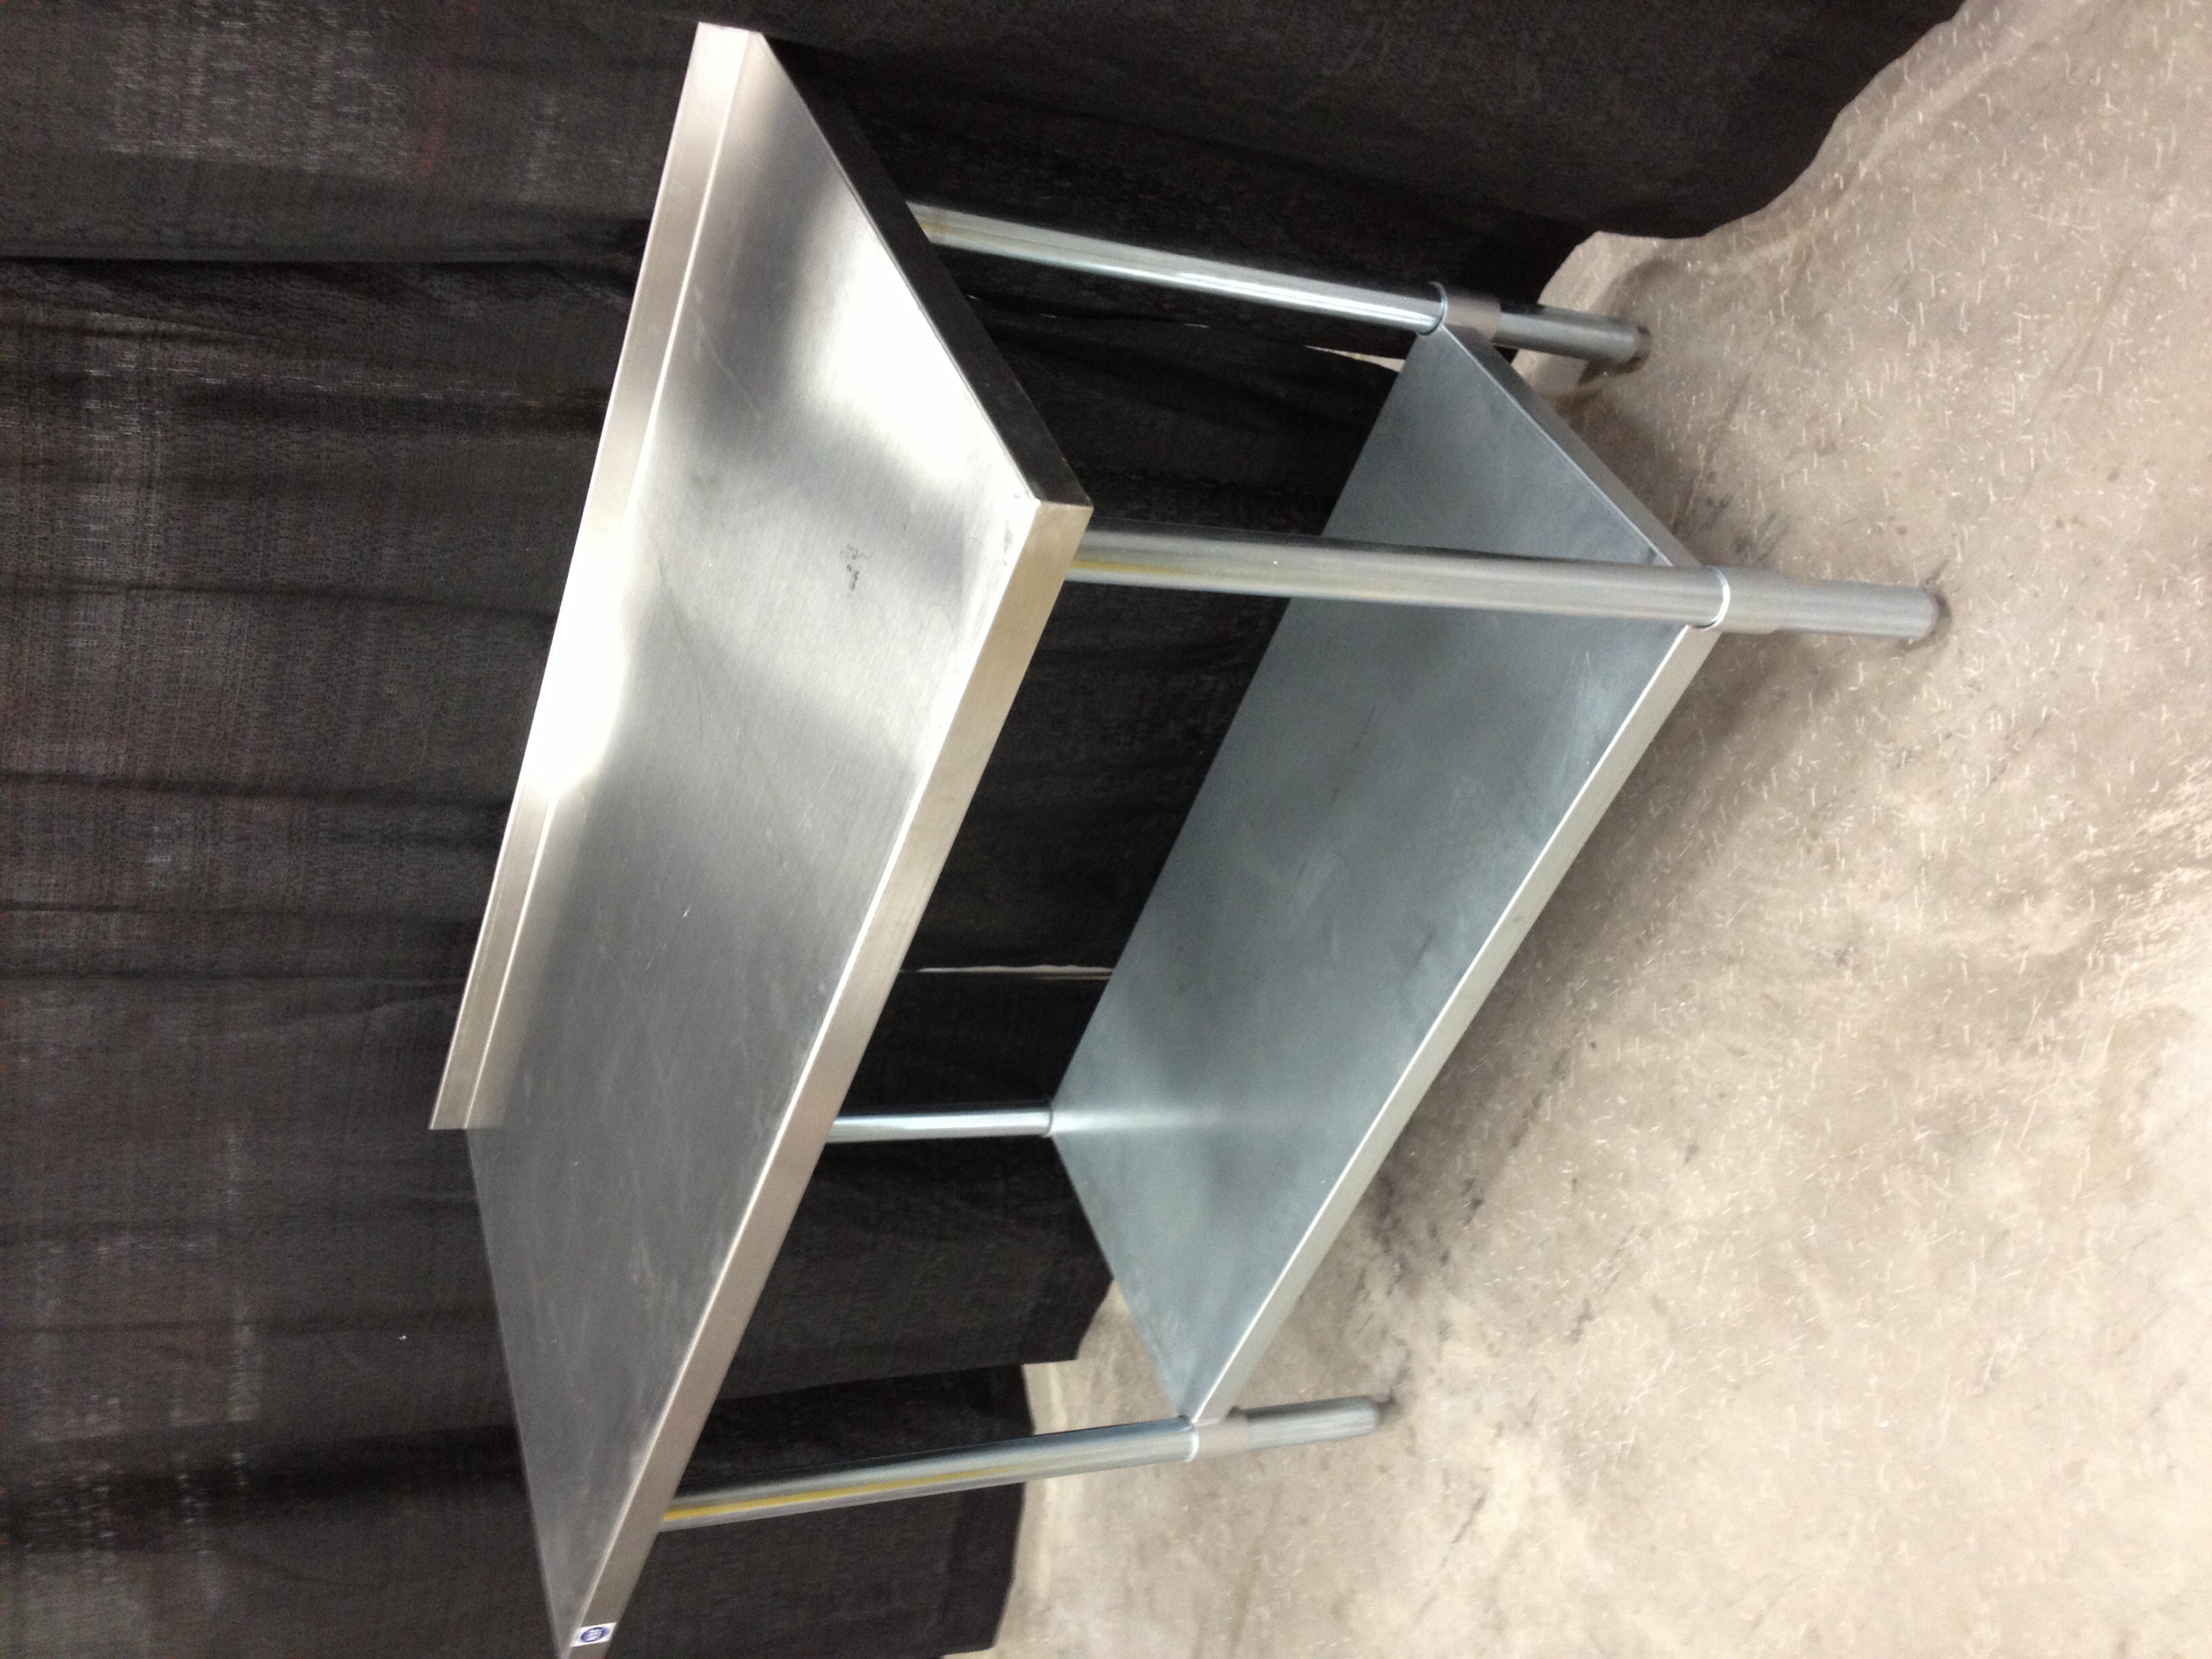 DB Restaurant Supply | STAINLESS STEEL WORK TABLE WITH UNDERSHELF 30X60 Stainless Steel Work Tables With Undershelf